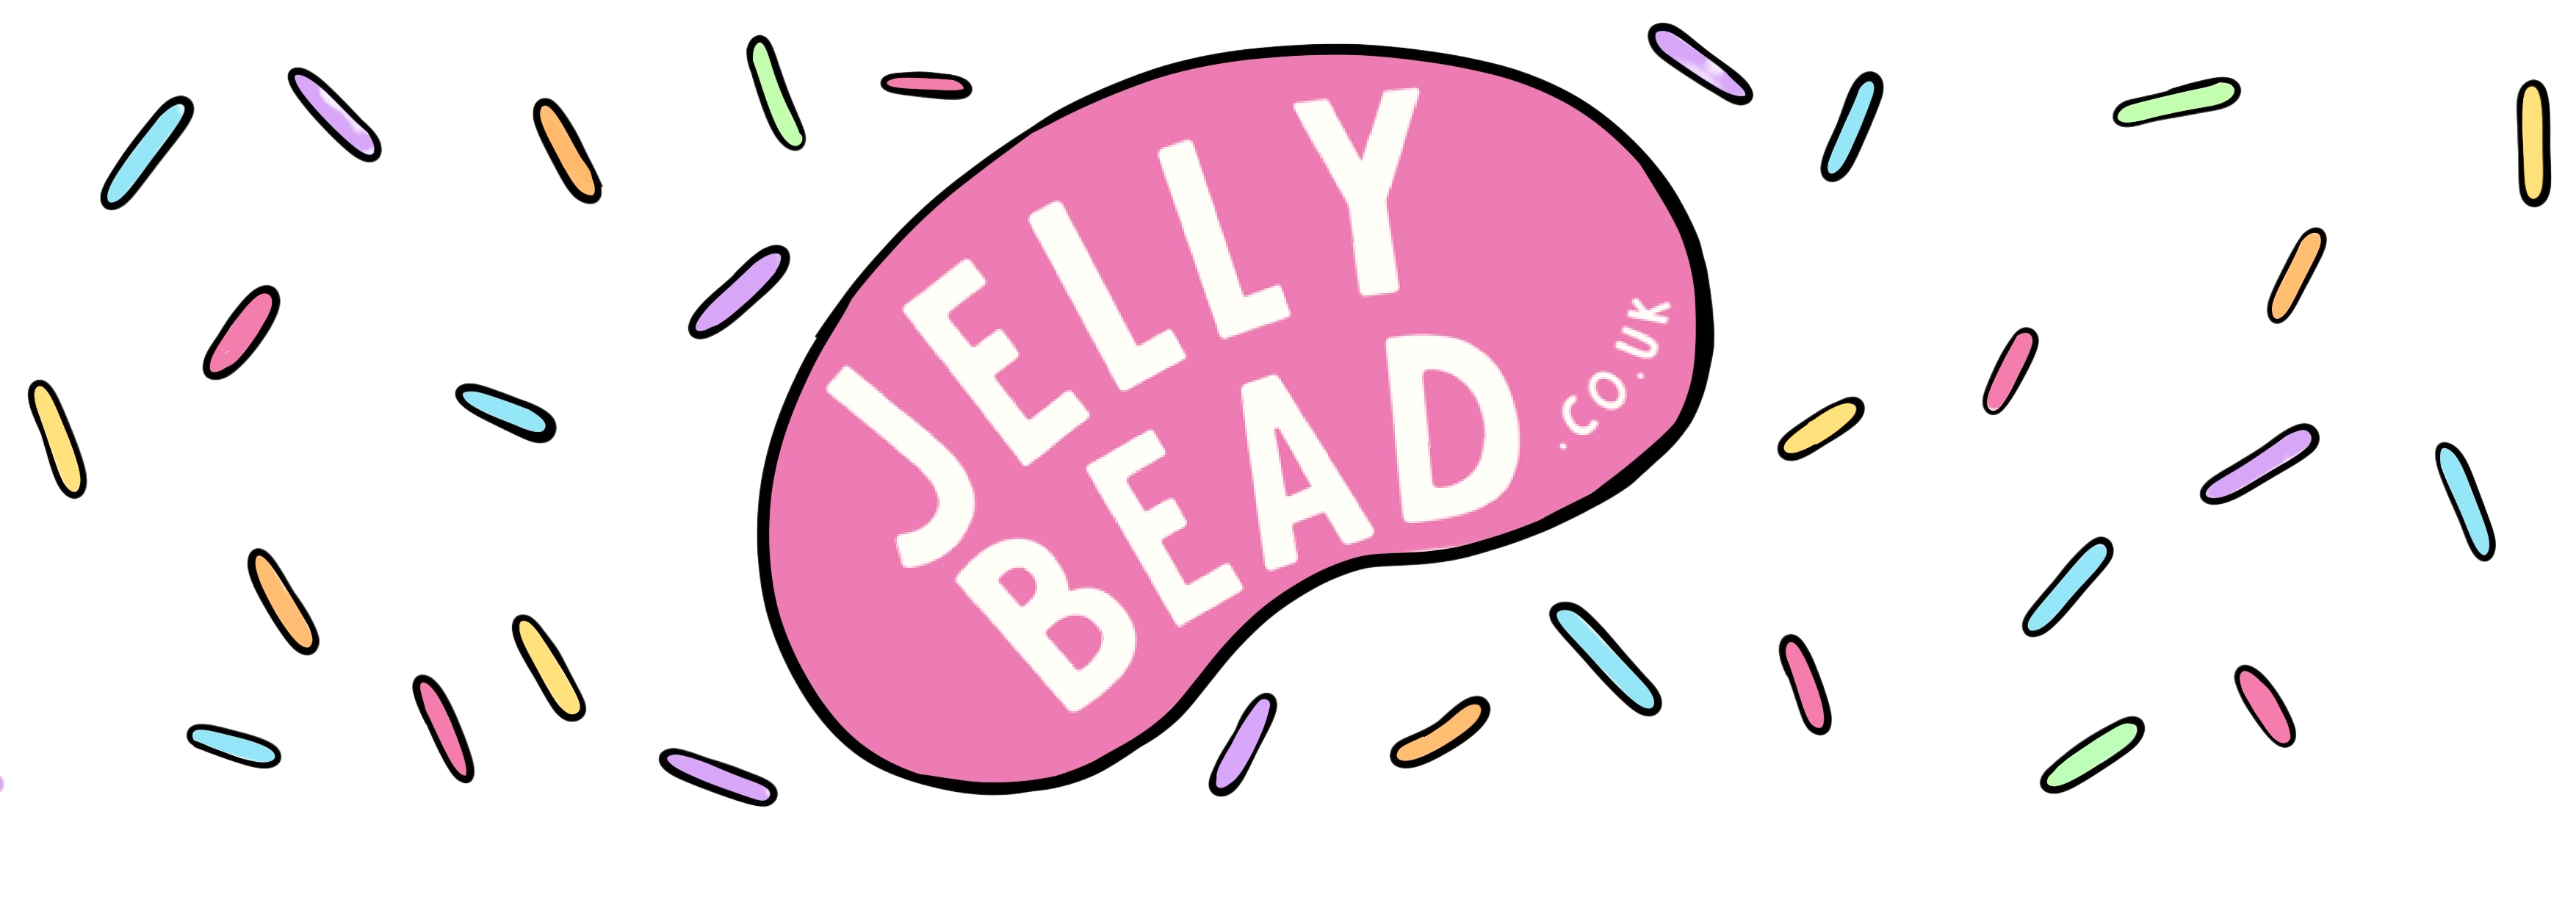 Jelly bead